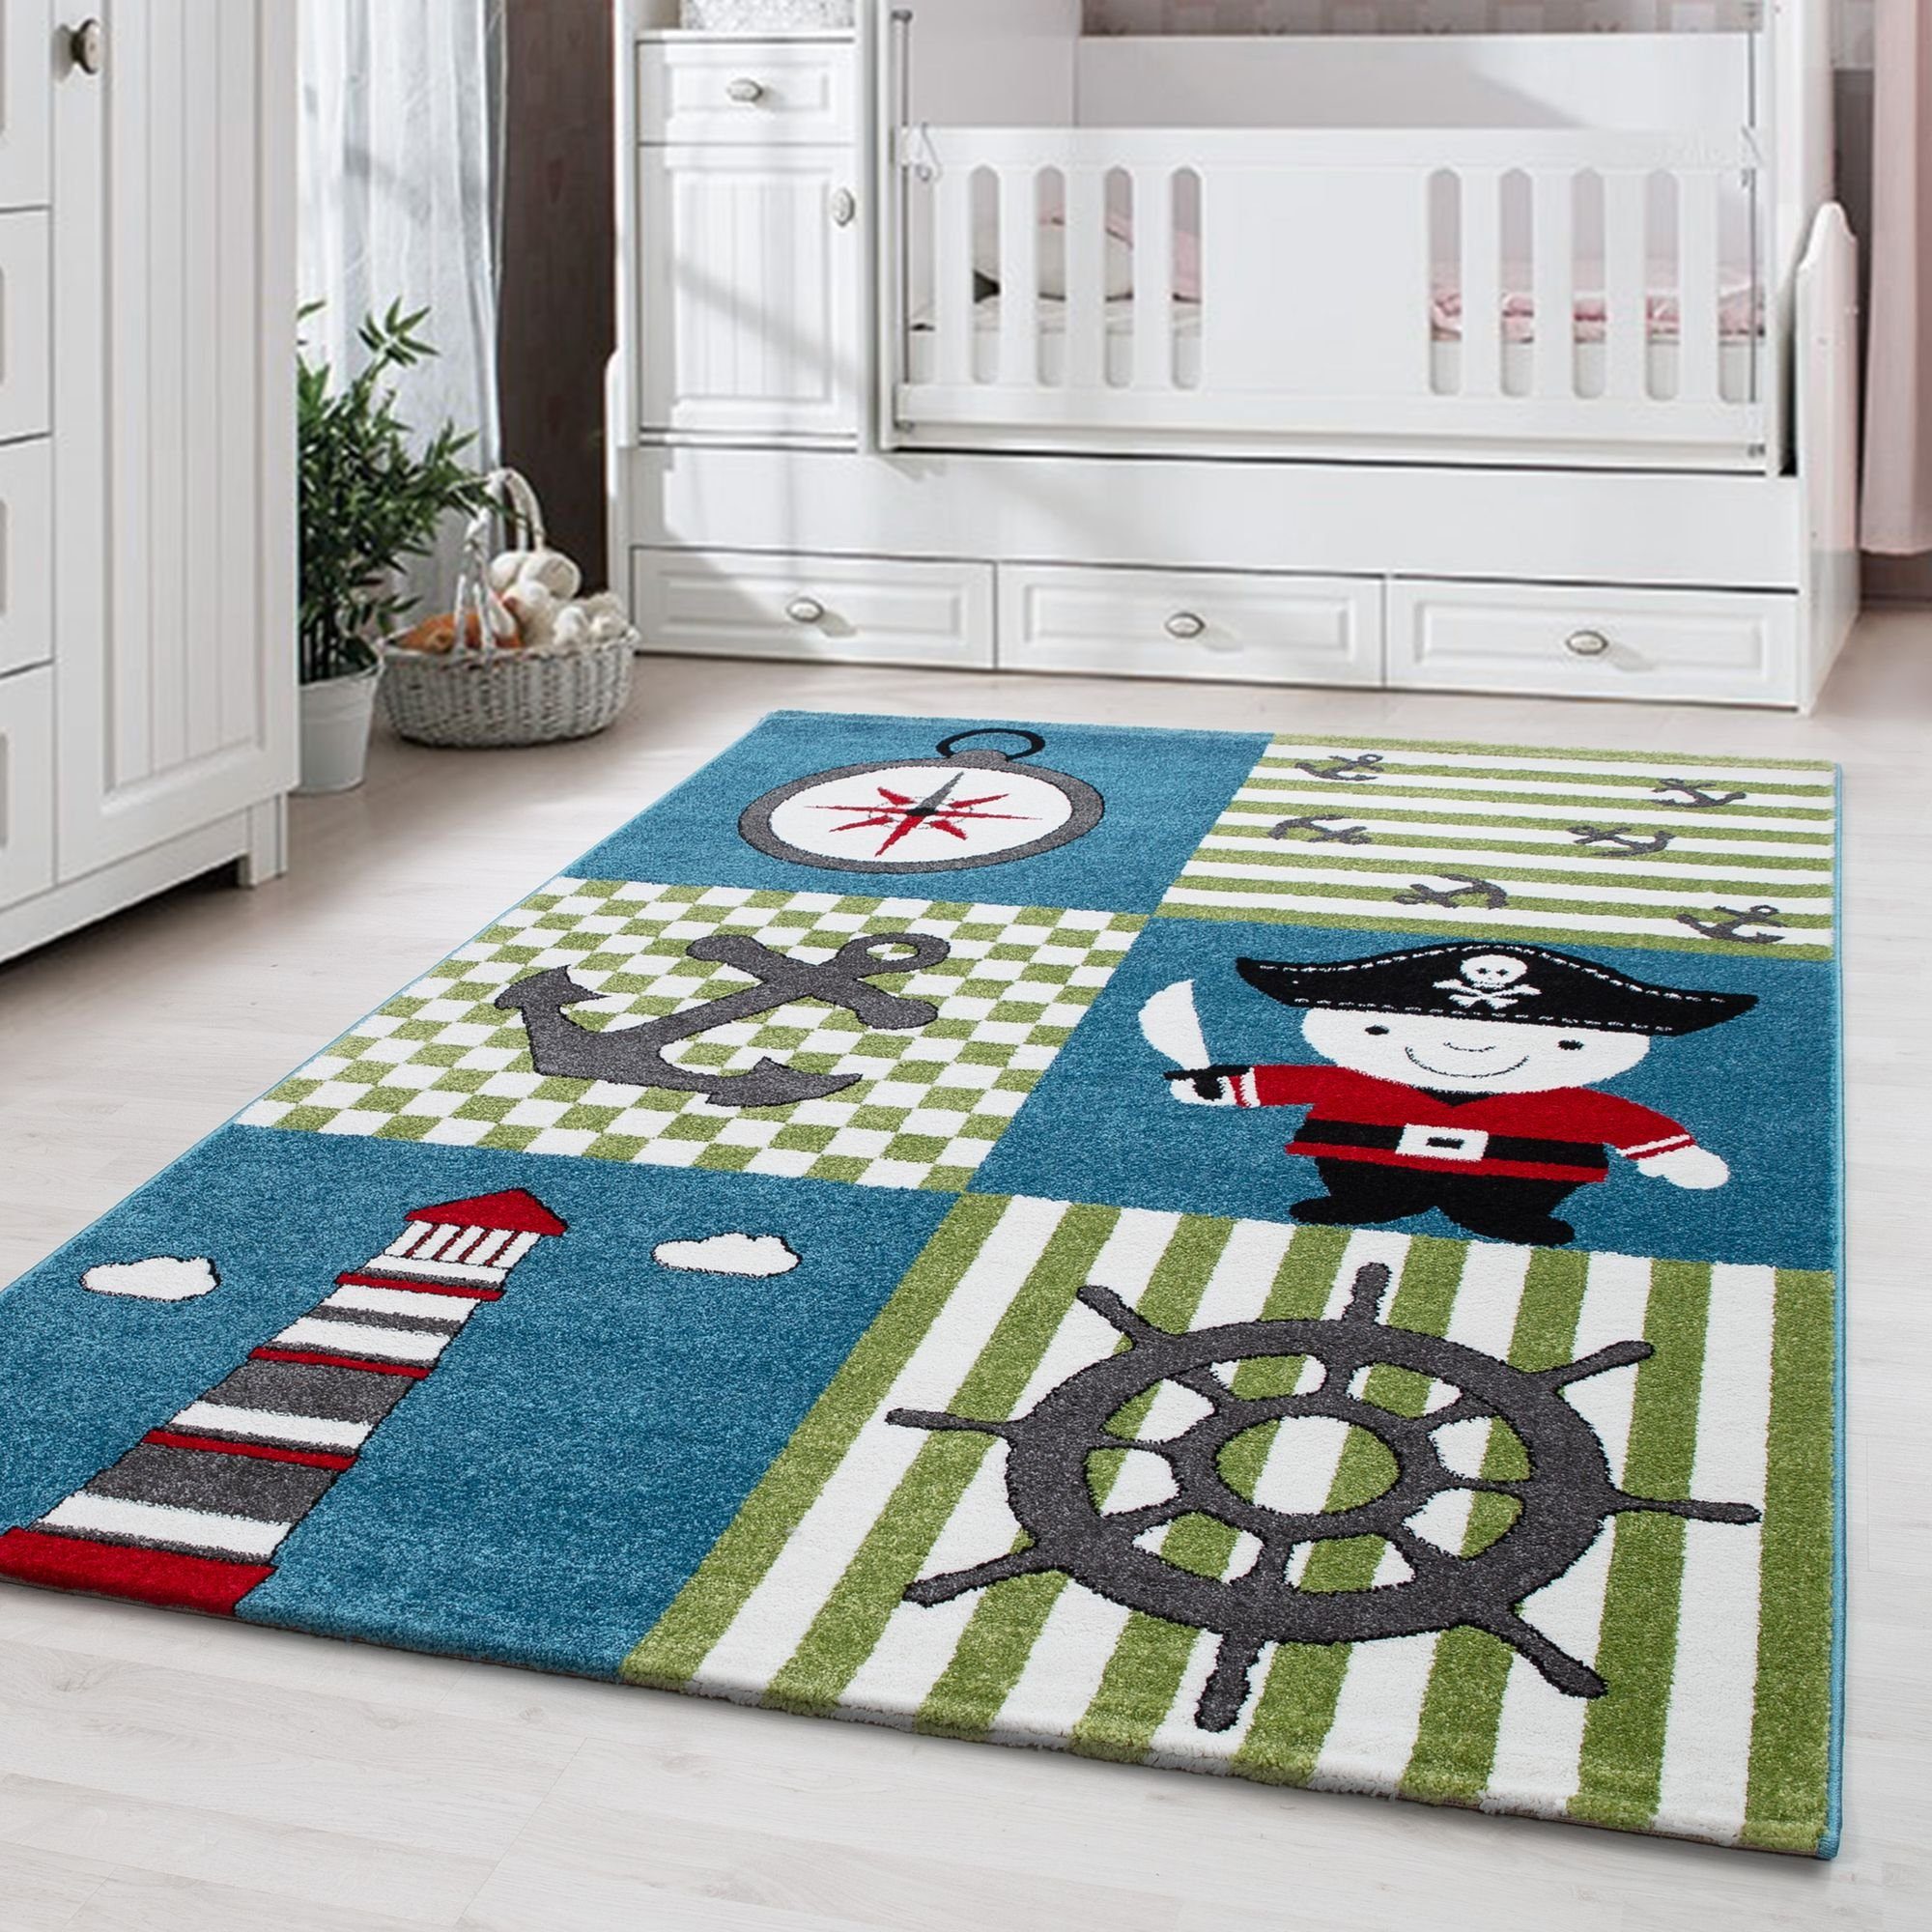 Kinderteppich Piraten-Design, Carpetsale24, Rund, Höhe: 11 mm, Kinderteppich Pirat-Design Bunt Baby Teppich Kinderzimmer Pflegeleicht